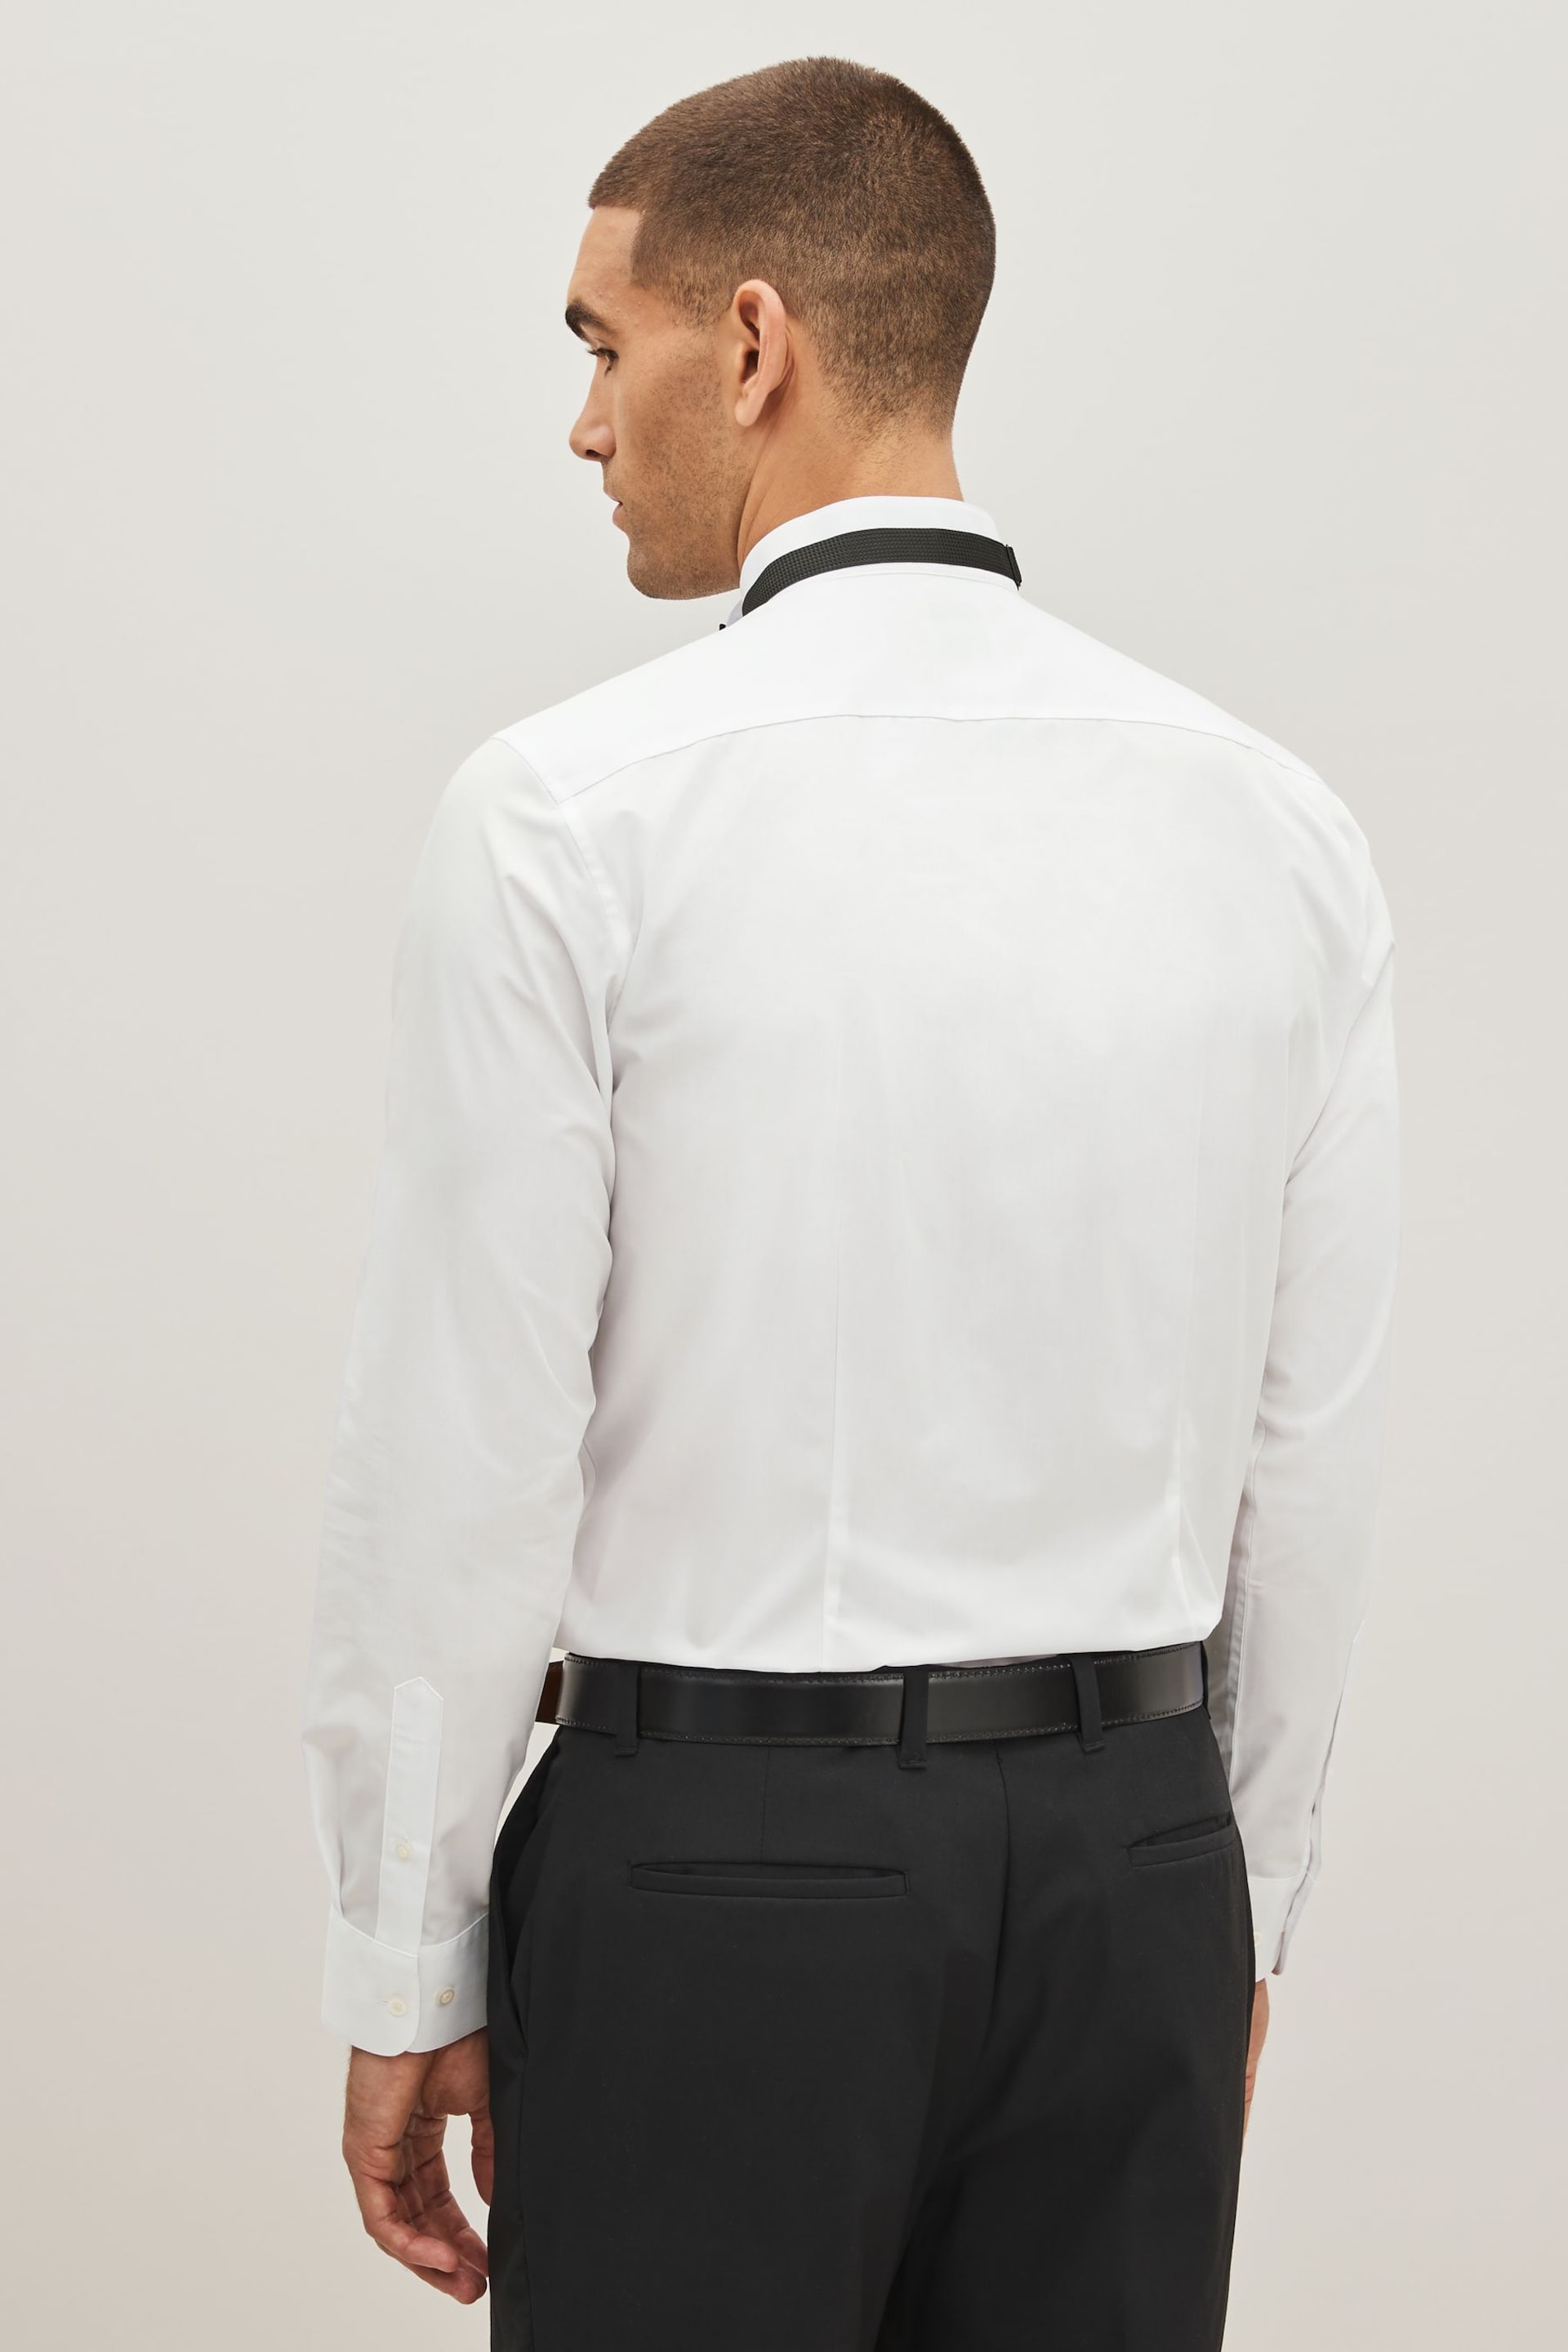 White Cotton Single Cuff Dress Shirt - Image 3 of 6